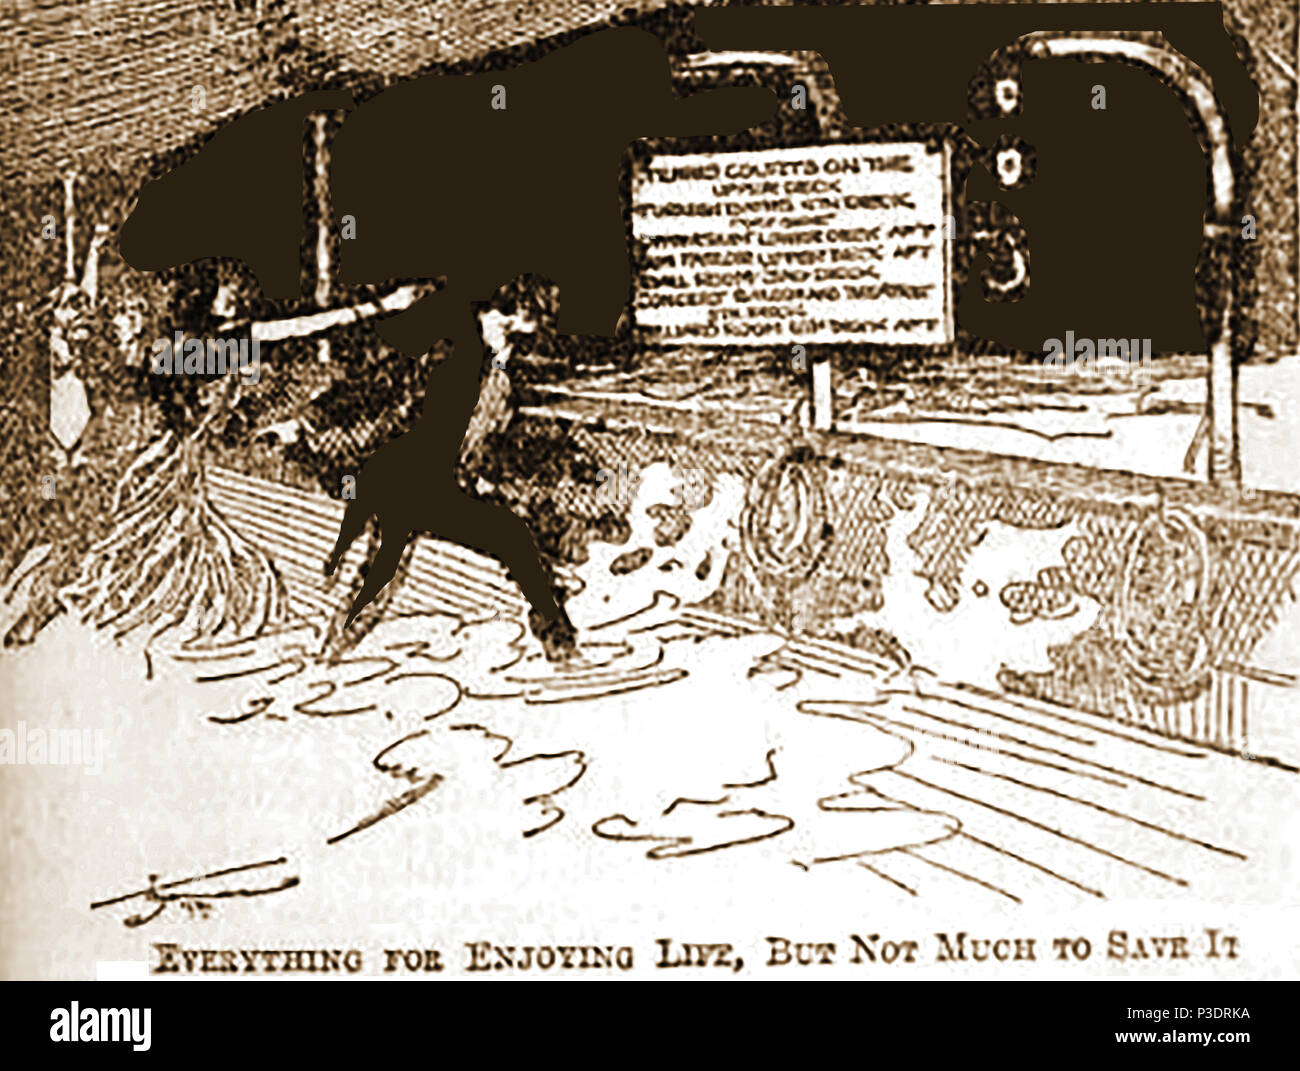 Una prensa crítica 1912 cartoon comentando la falta de equipos de salvamento que provocó el hundimiento del RMS Titanic Foto de stock